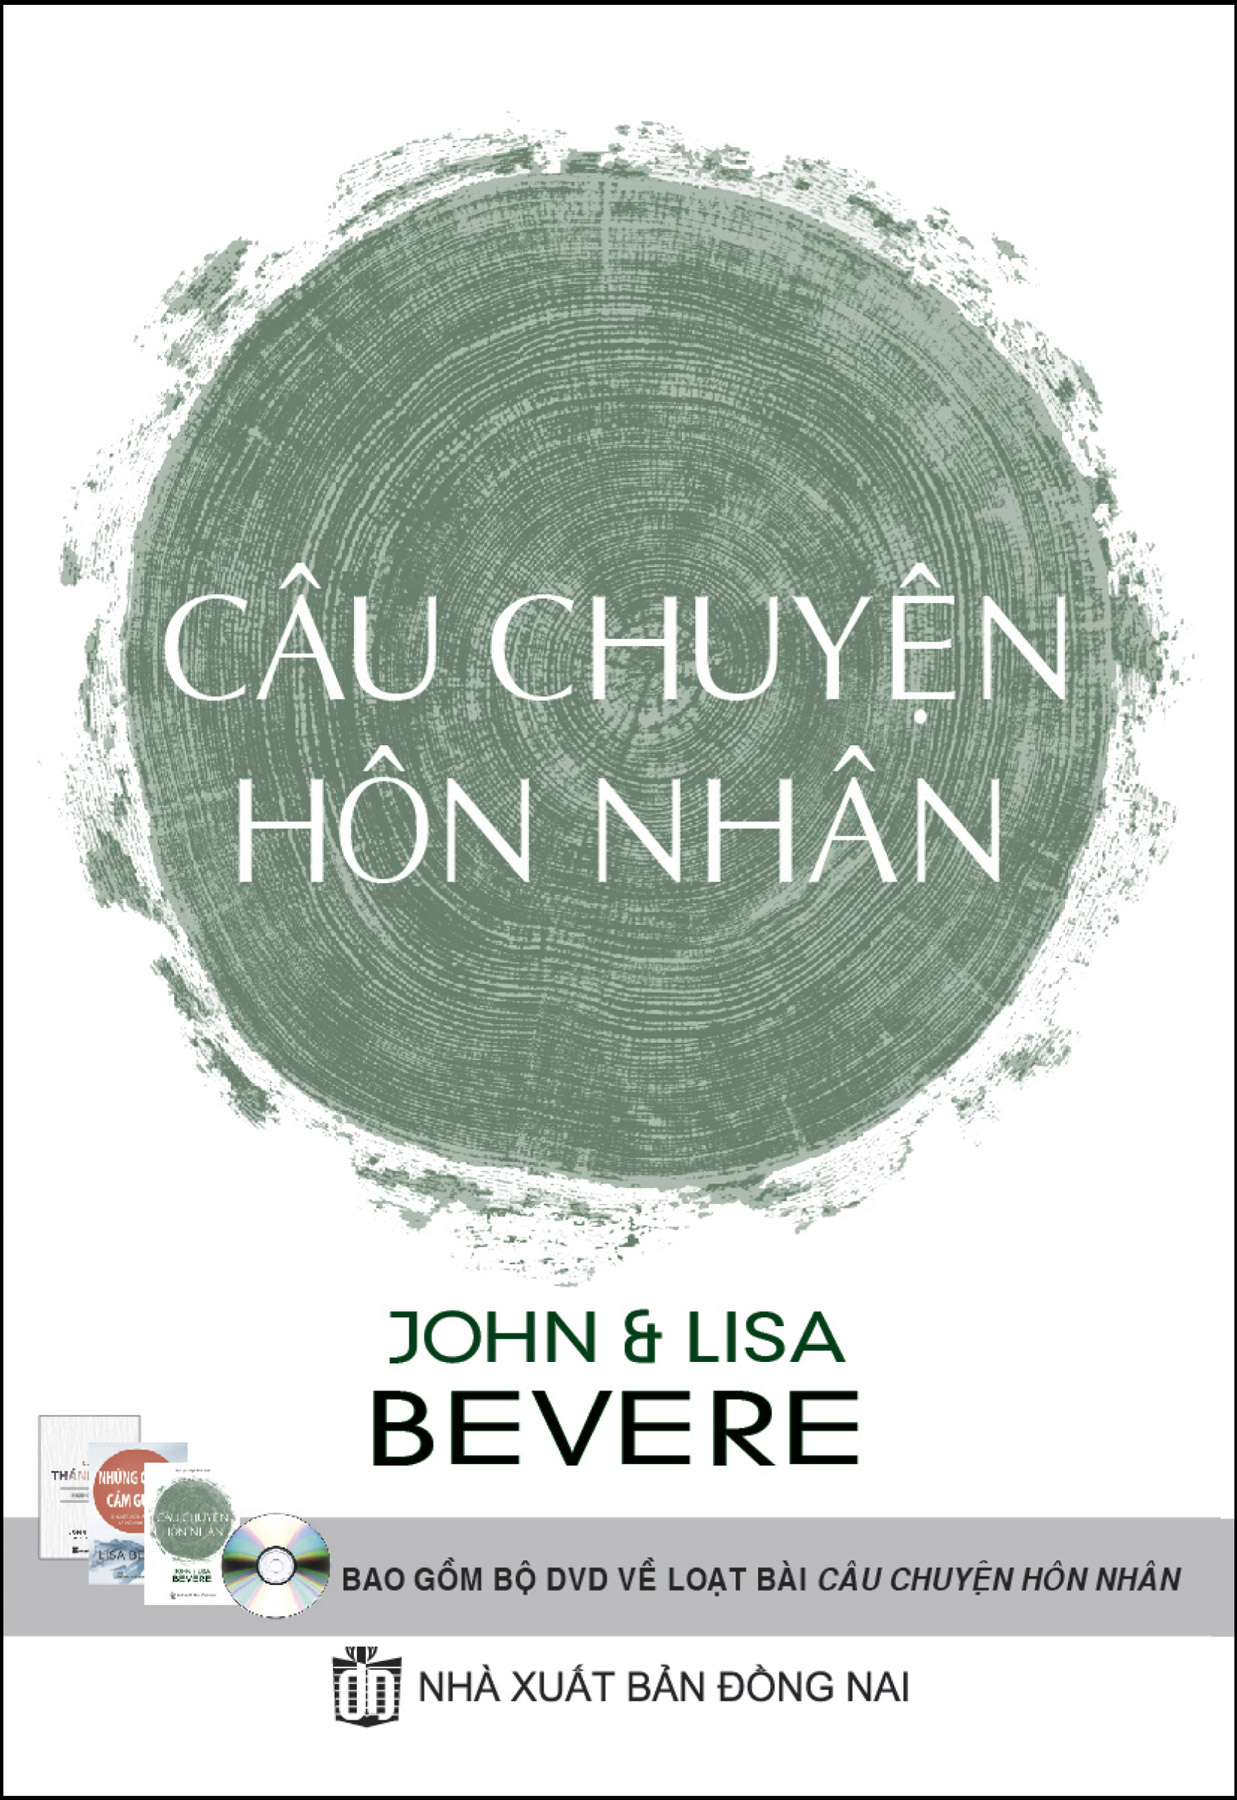 CauChuyenHonNhan Vietnamese Story of Marriage Book